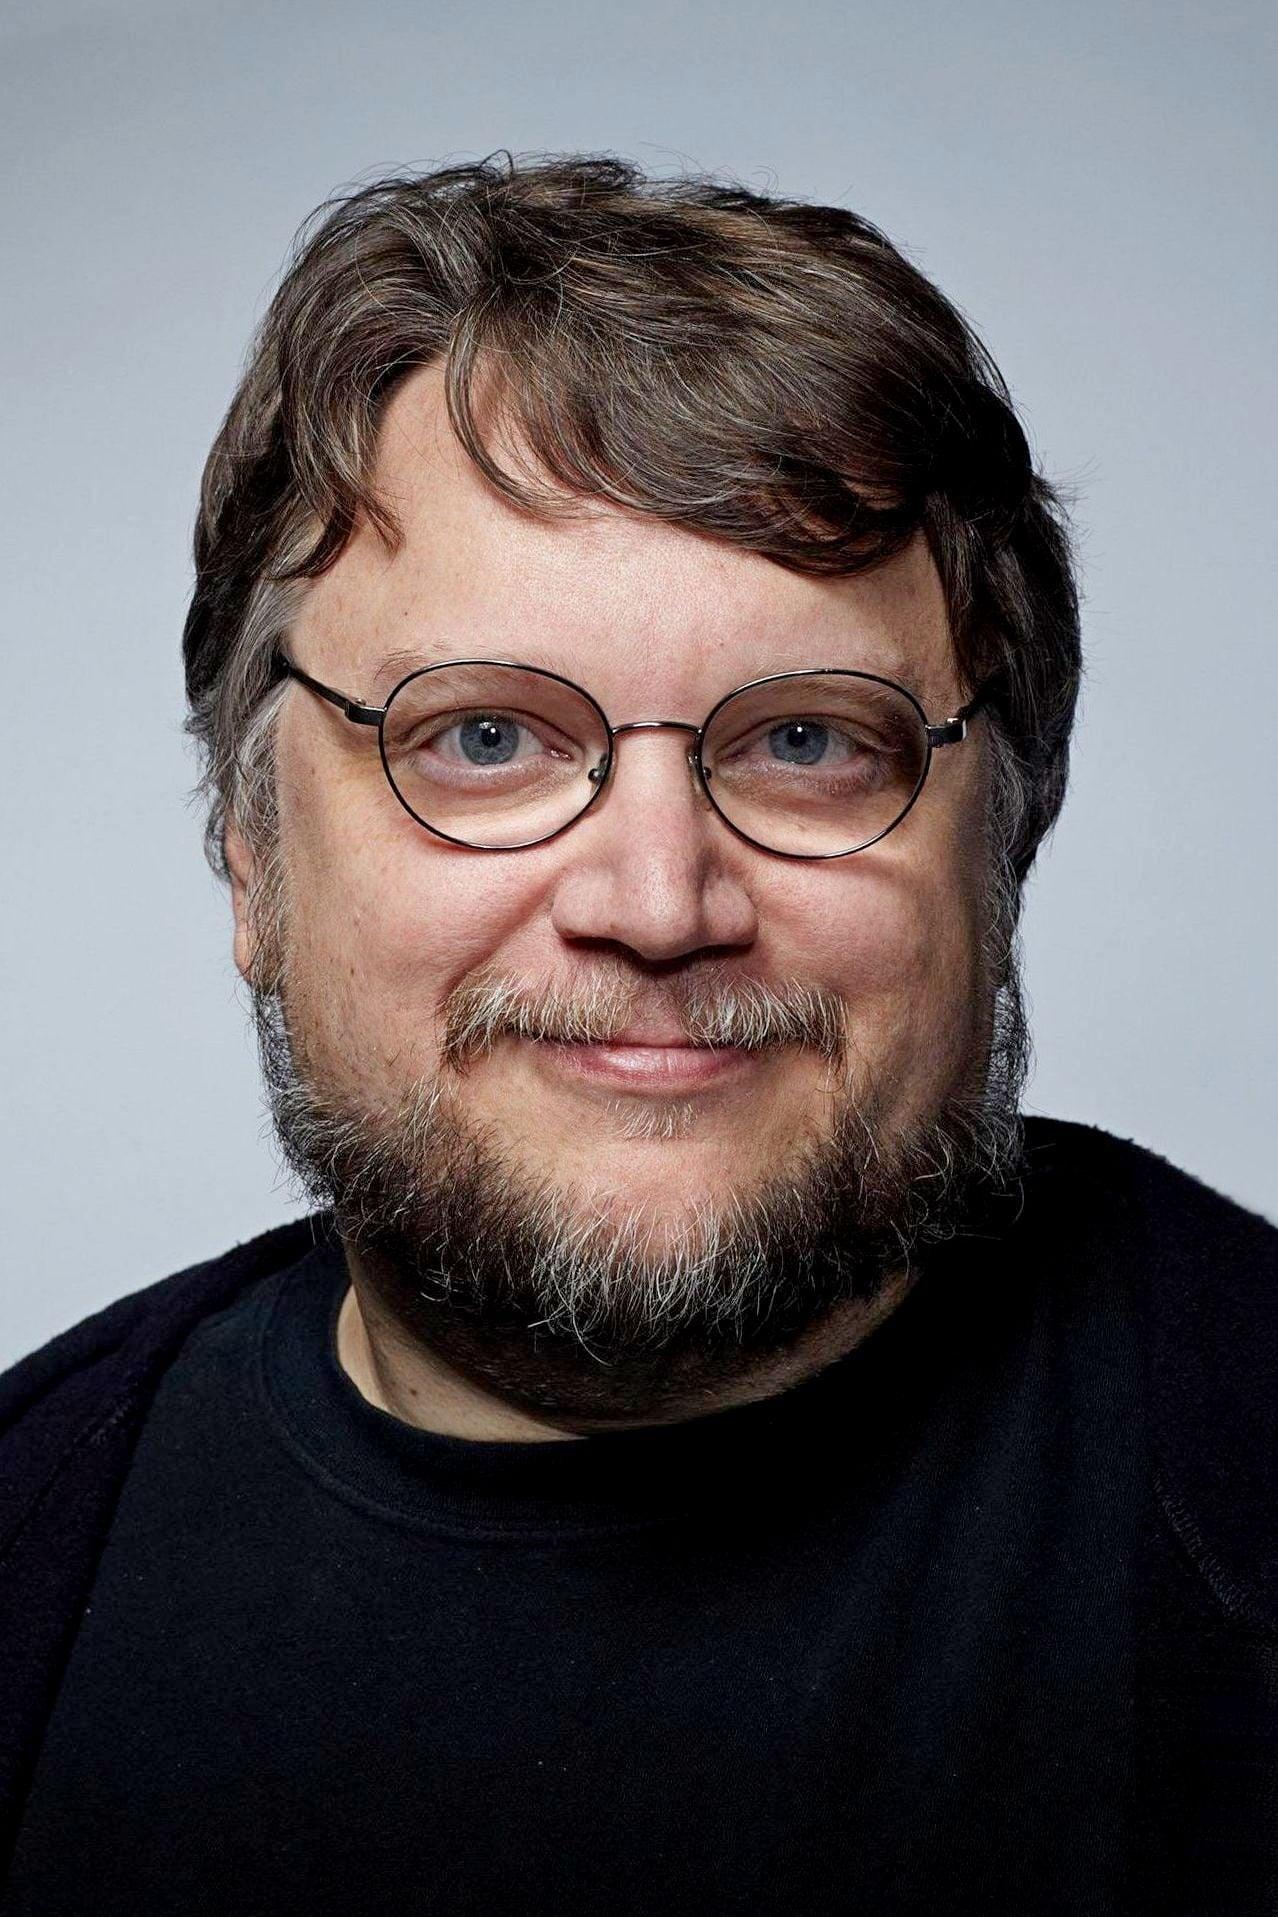 Guillermo del Toro poster